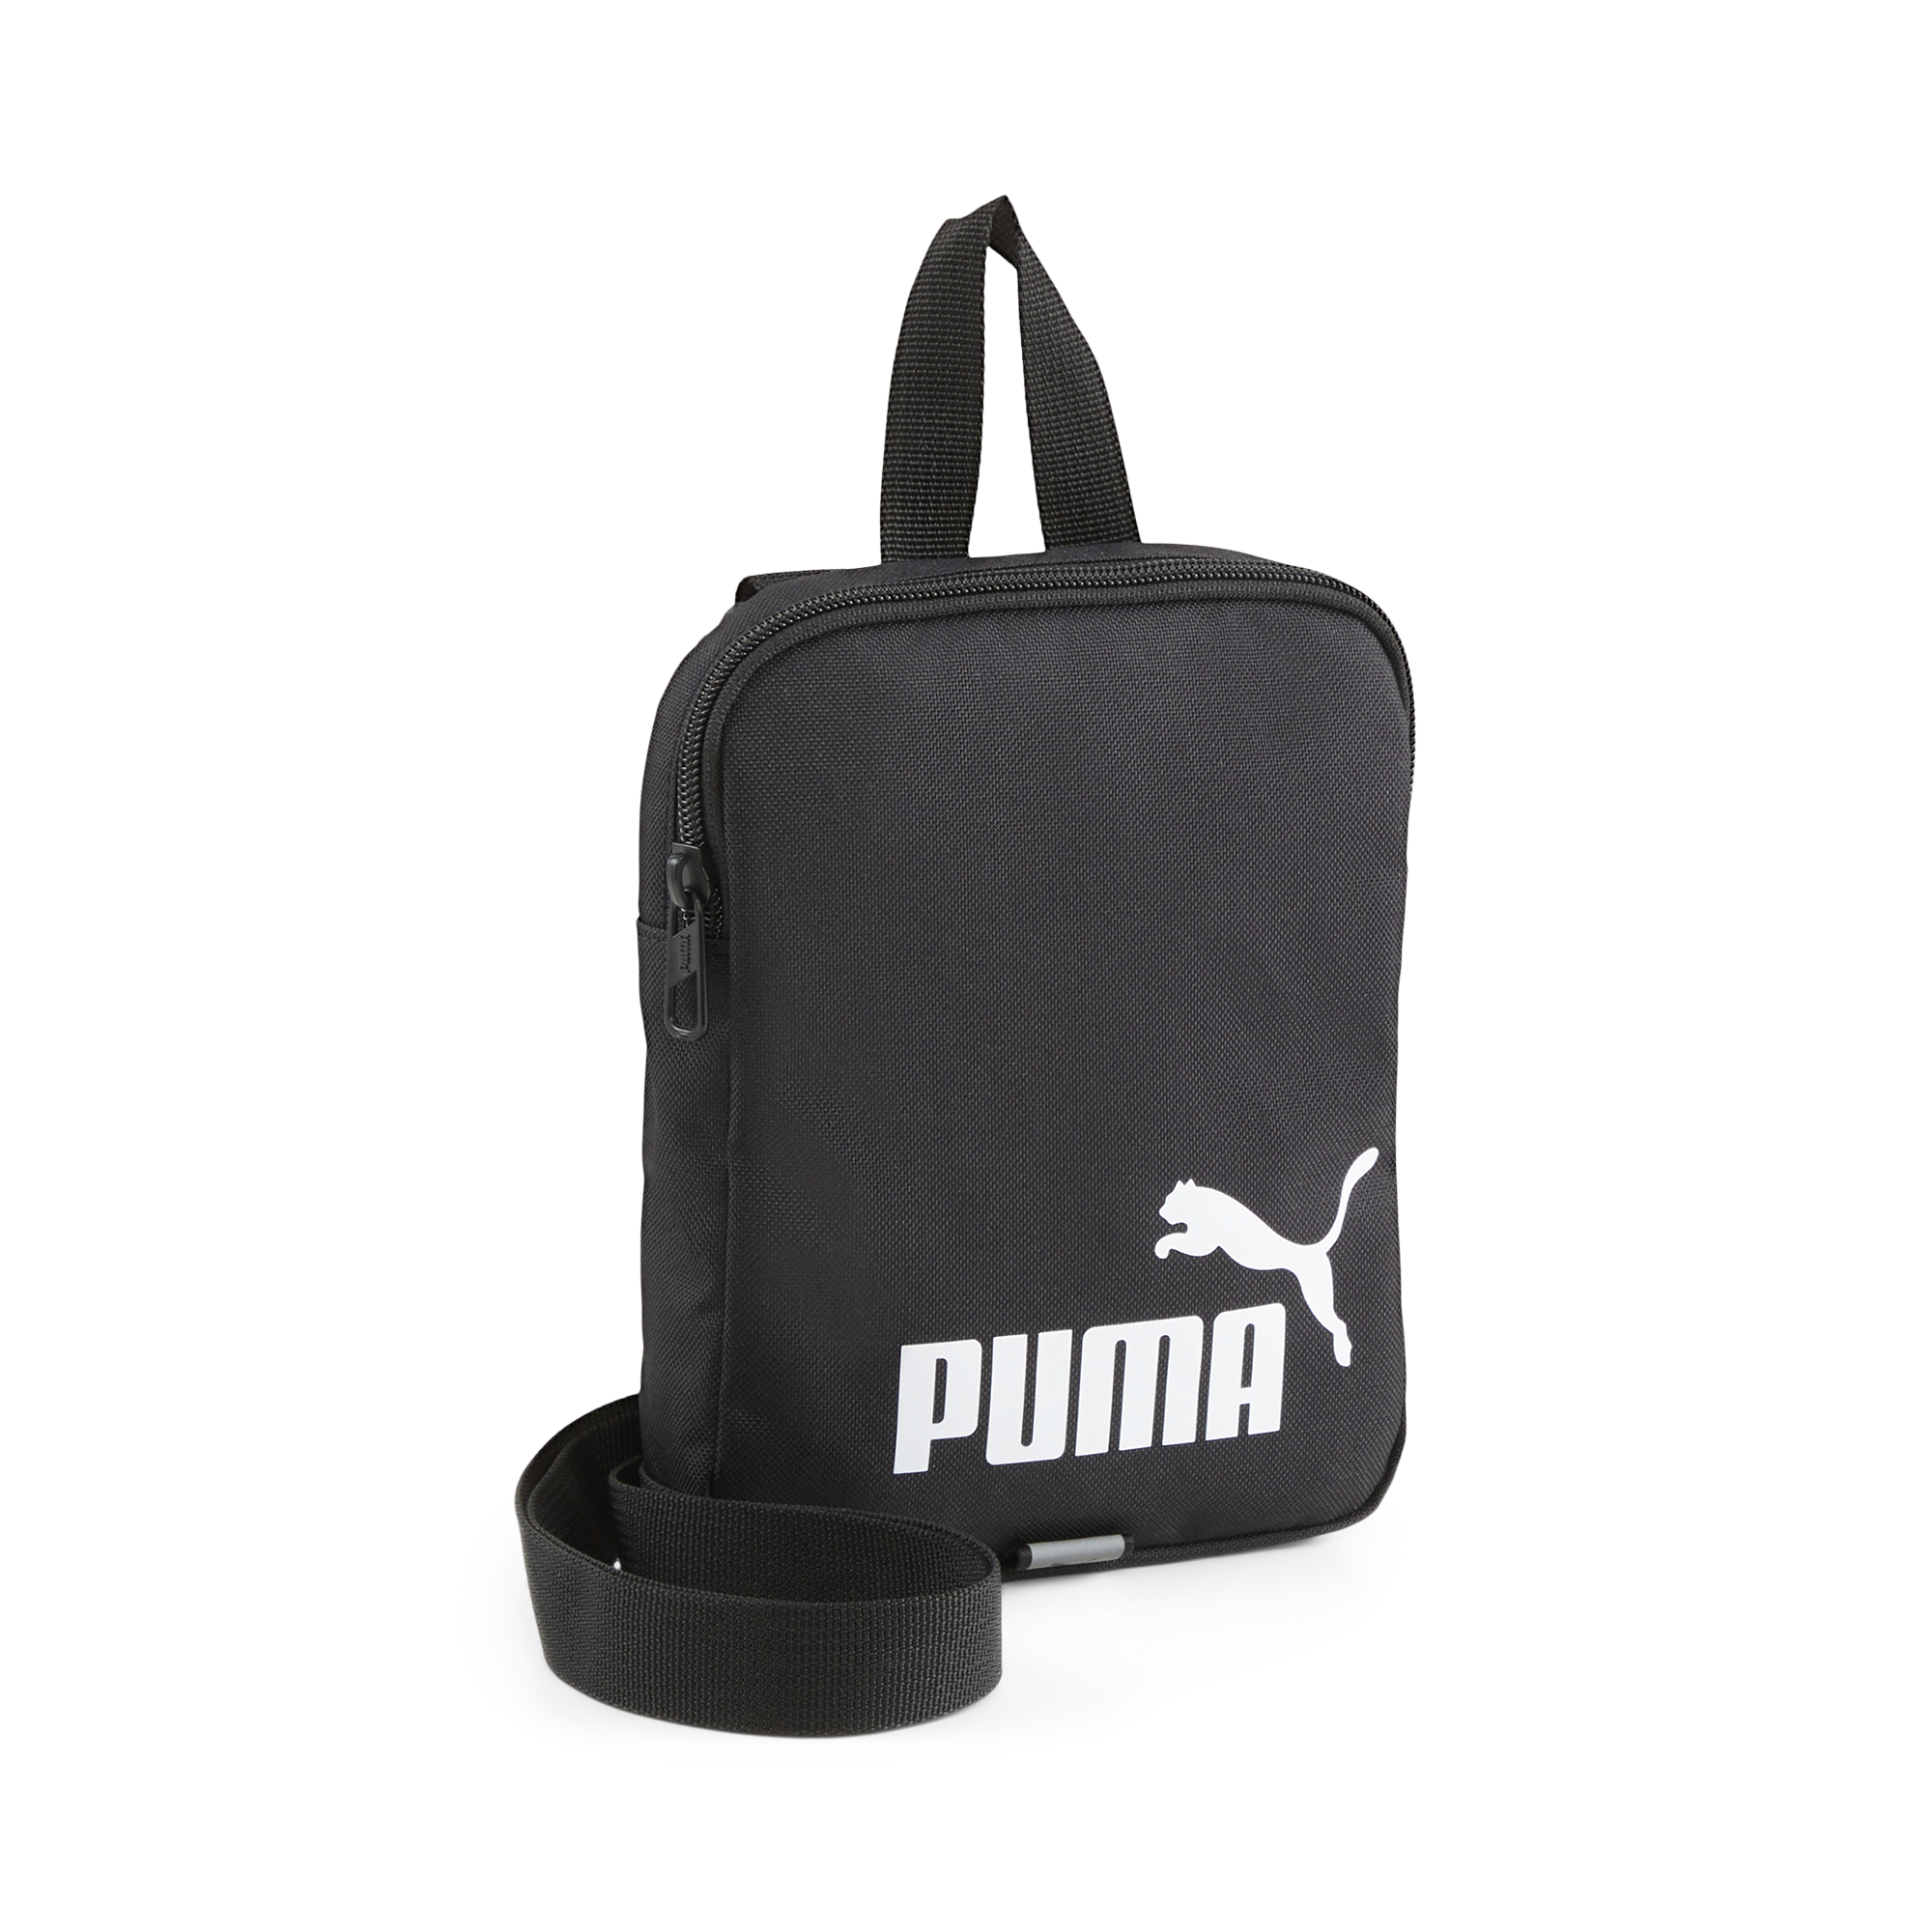 PUMA Phase Portable OSFA / Puma Black